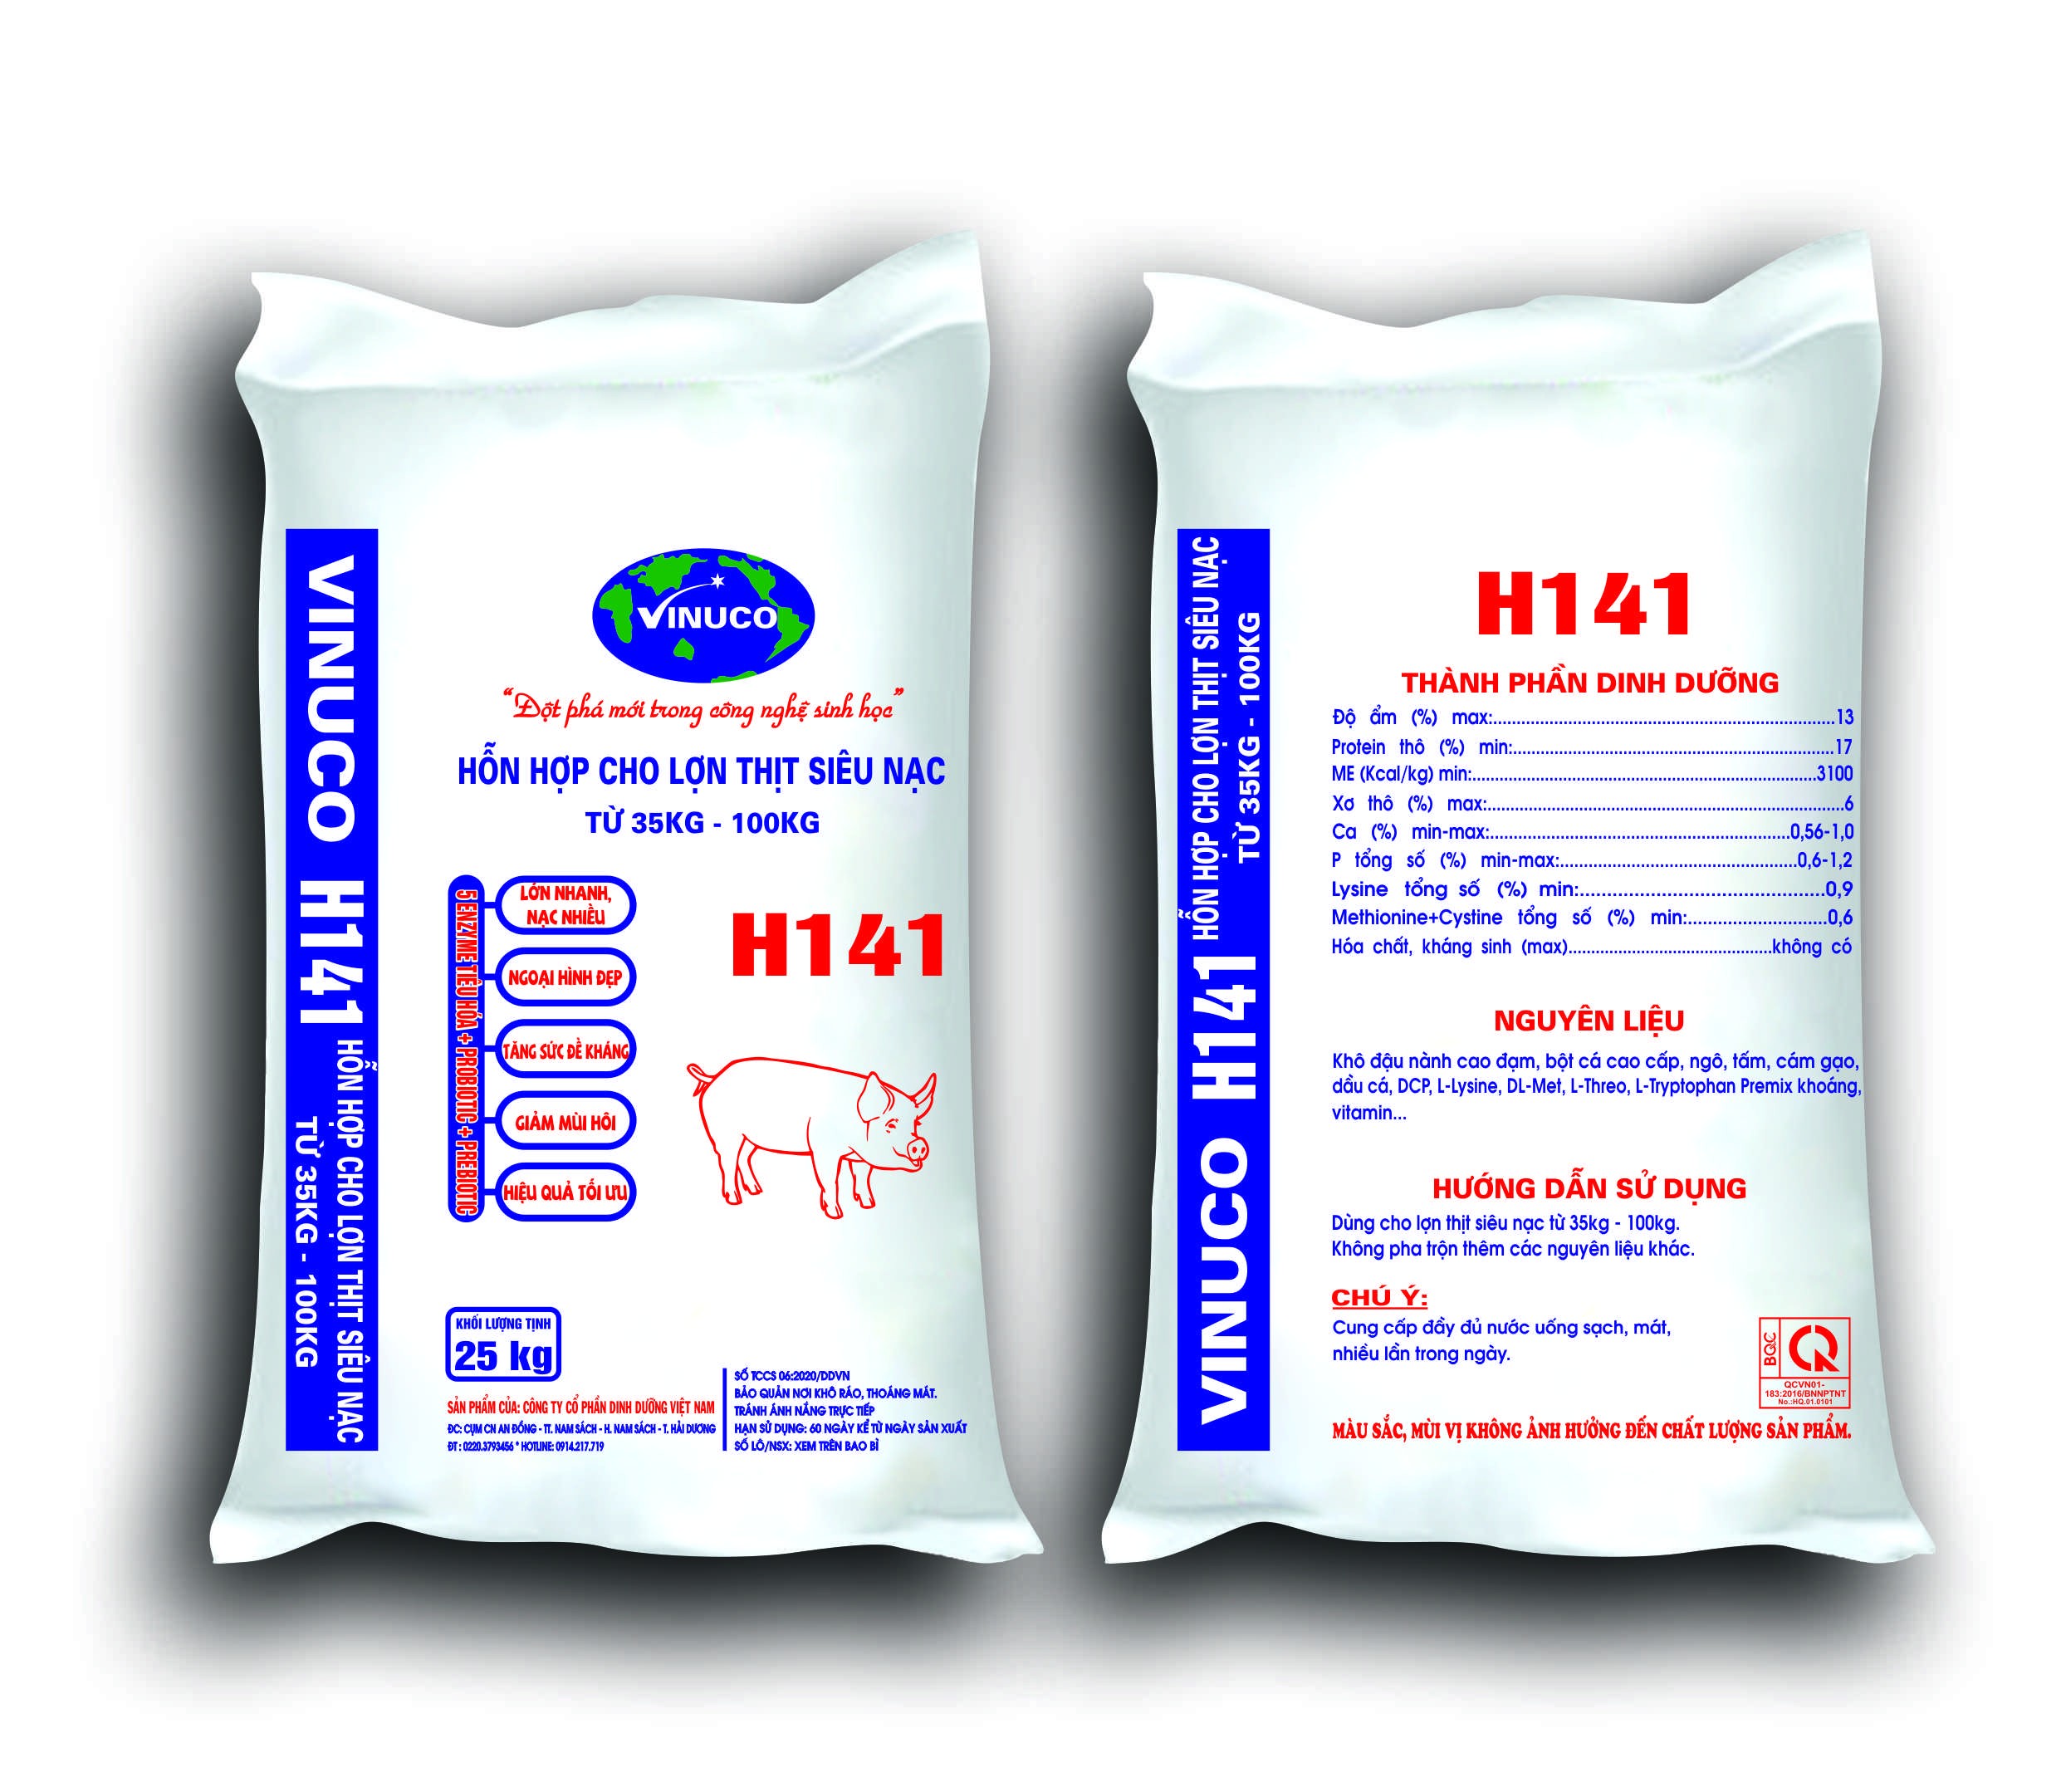 H141 - Hỗn hợp cho lợn thịt siêu nạc (Từ 35kg - 100kg)